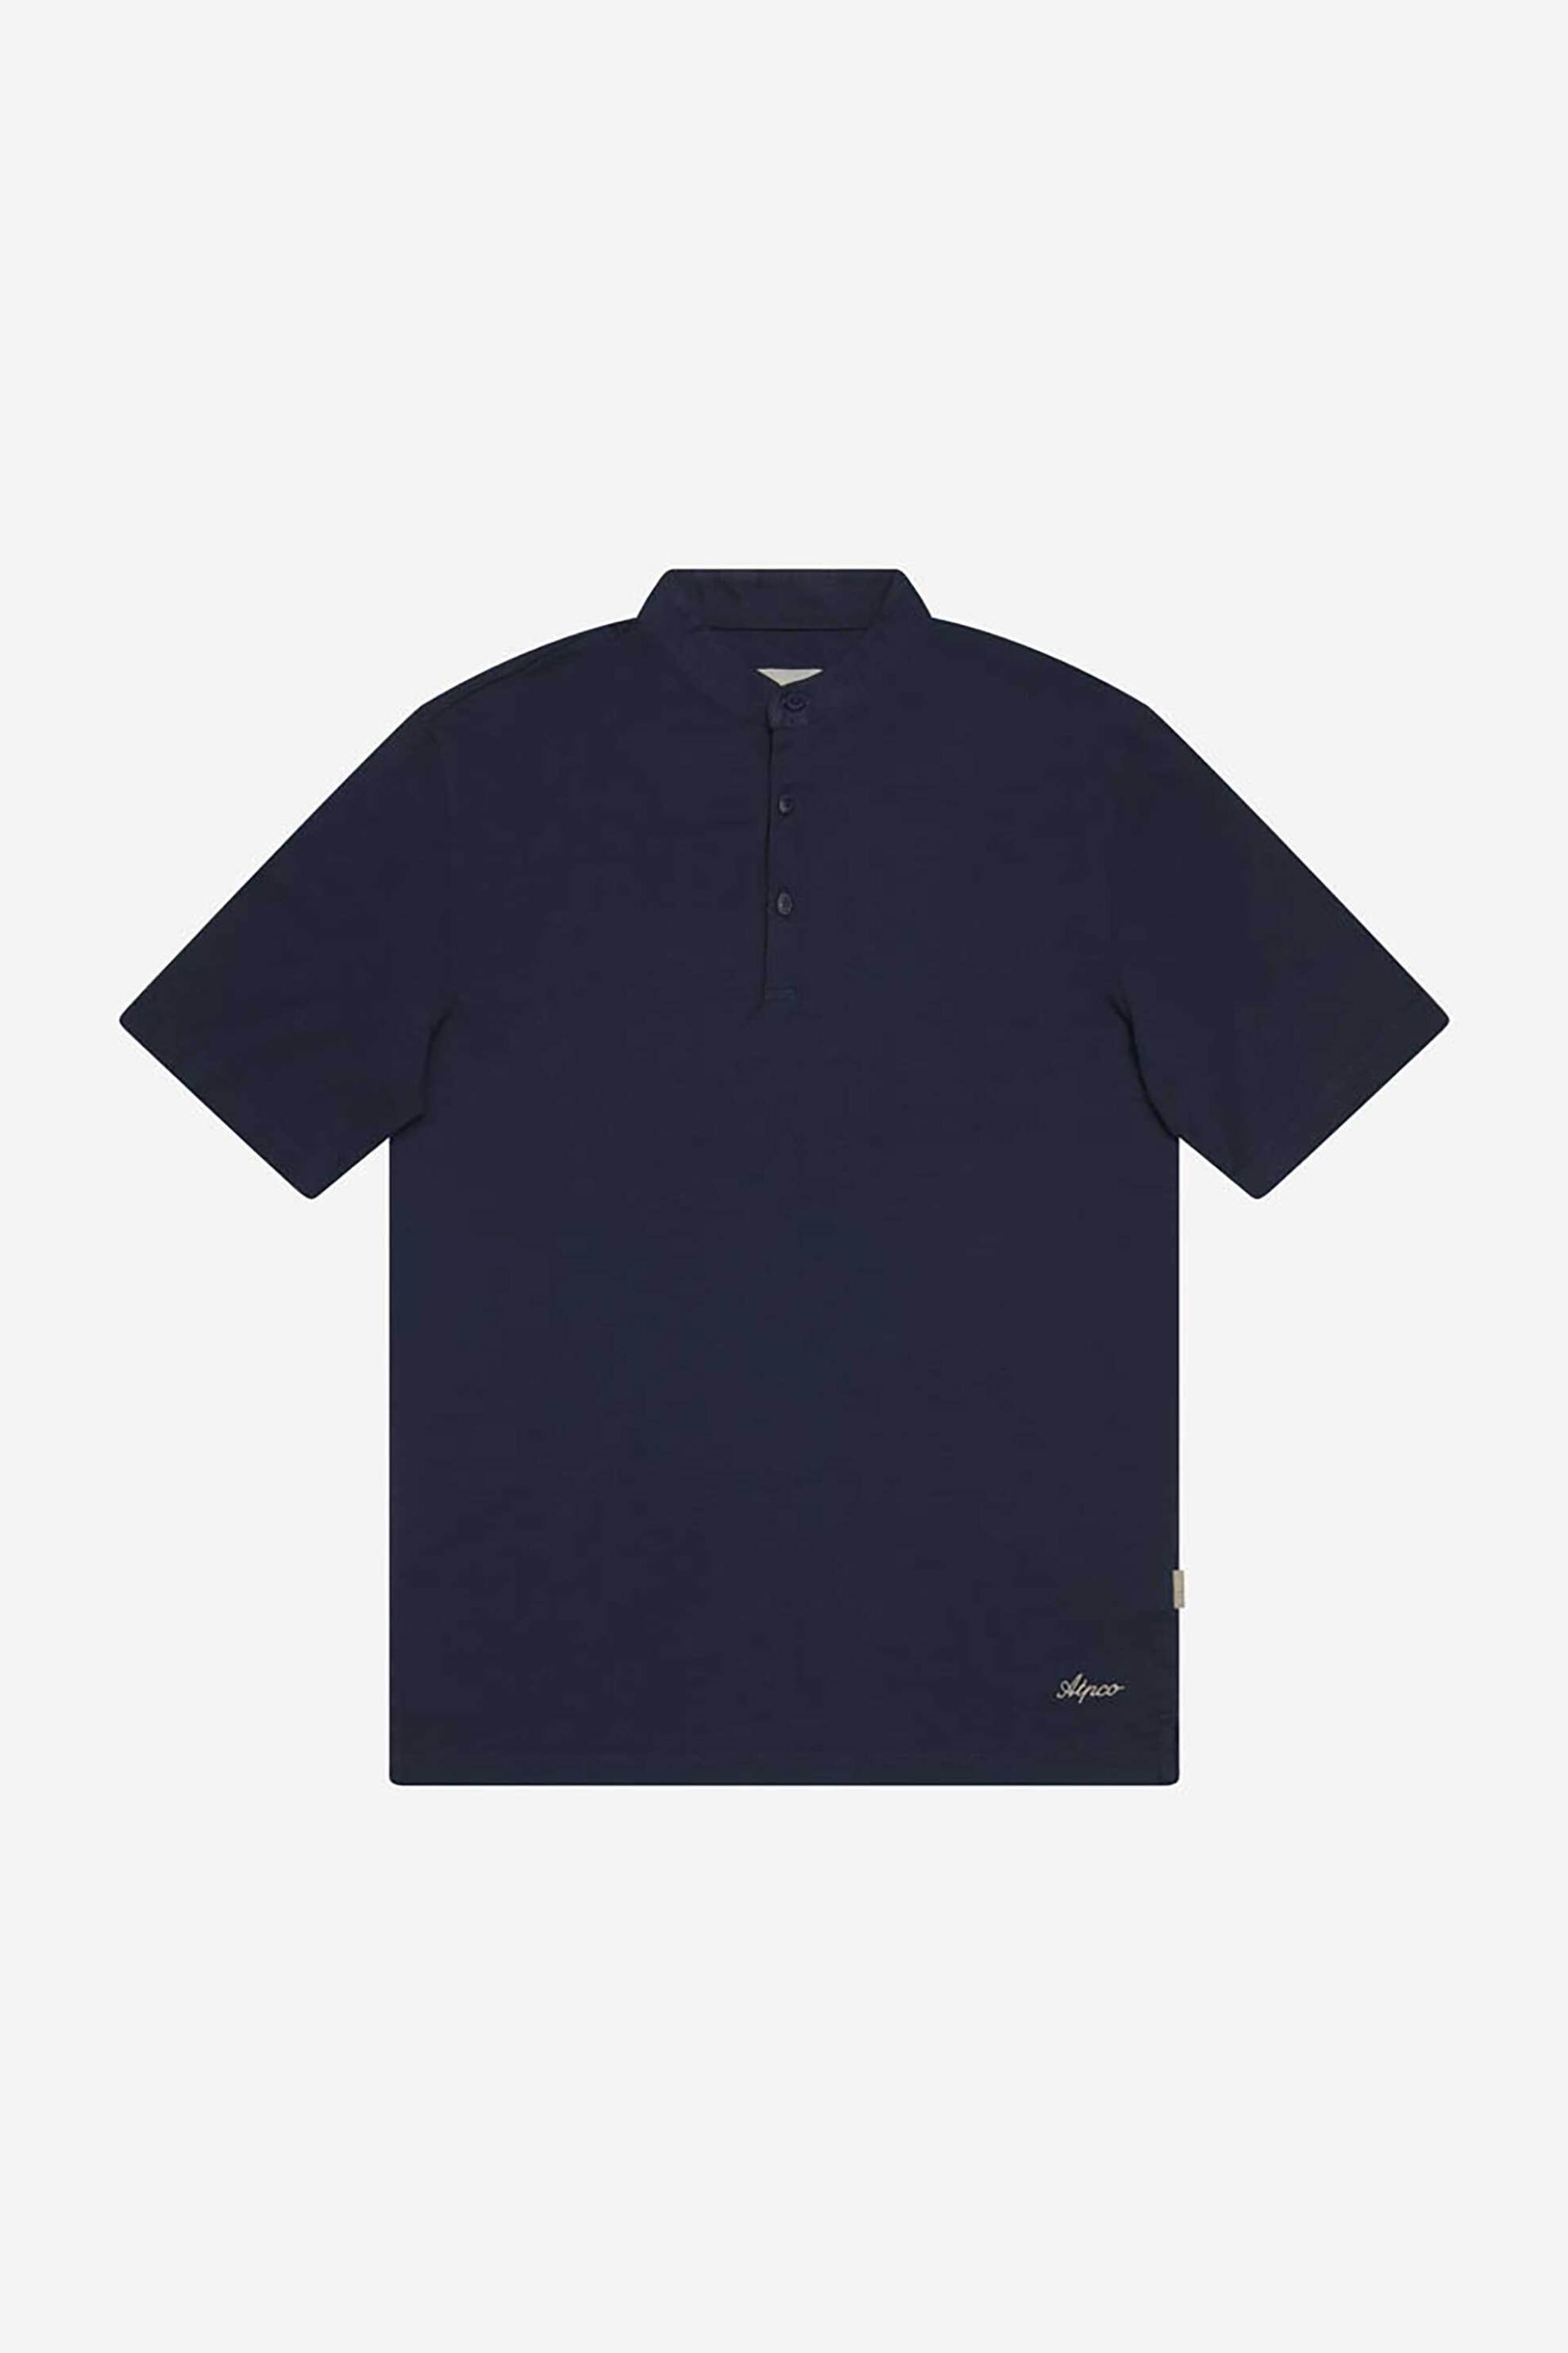 Ανδρική Μόδα > Ανδρικά Ρούχα > Ανδρικές Μπλούζες > Ανδρικές Μπλούζες Πολο AT.P.CO ανδρική μπλούζα πόλο μονόχρωμη με κεντημένο logo και γιακά mandarin - A285P9J01- Σκούρο Μπλε